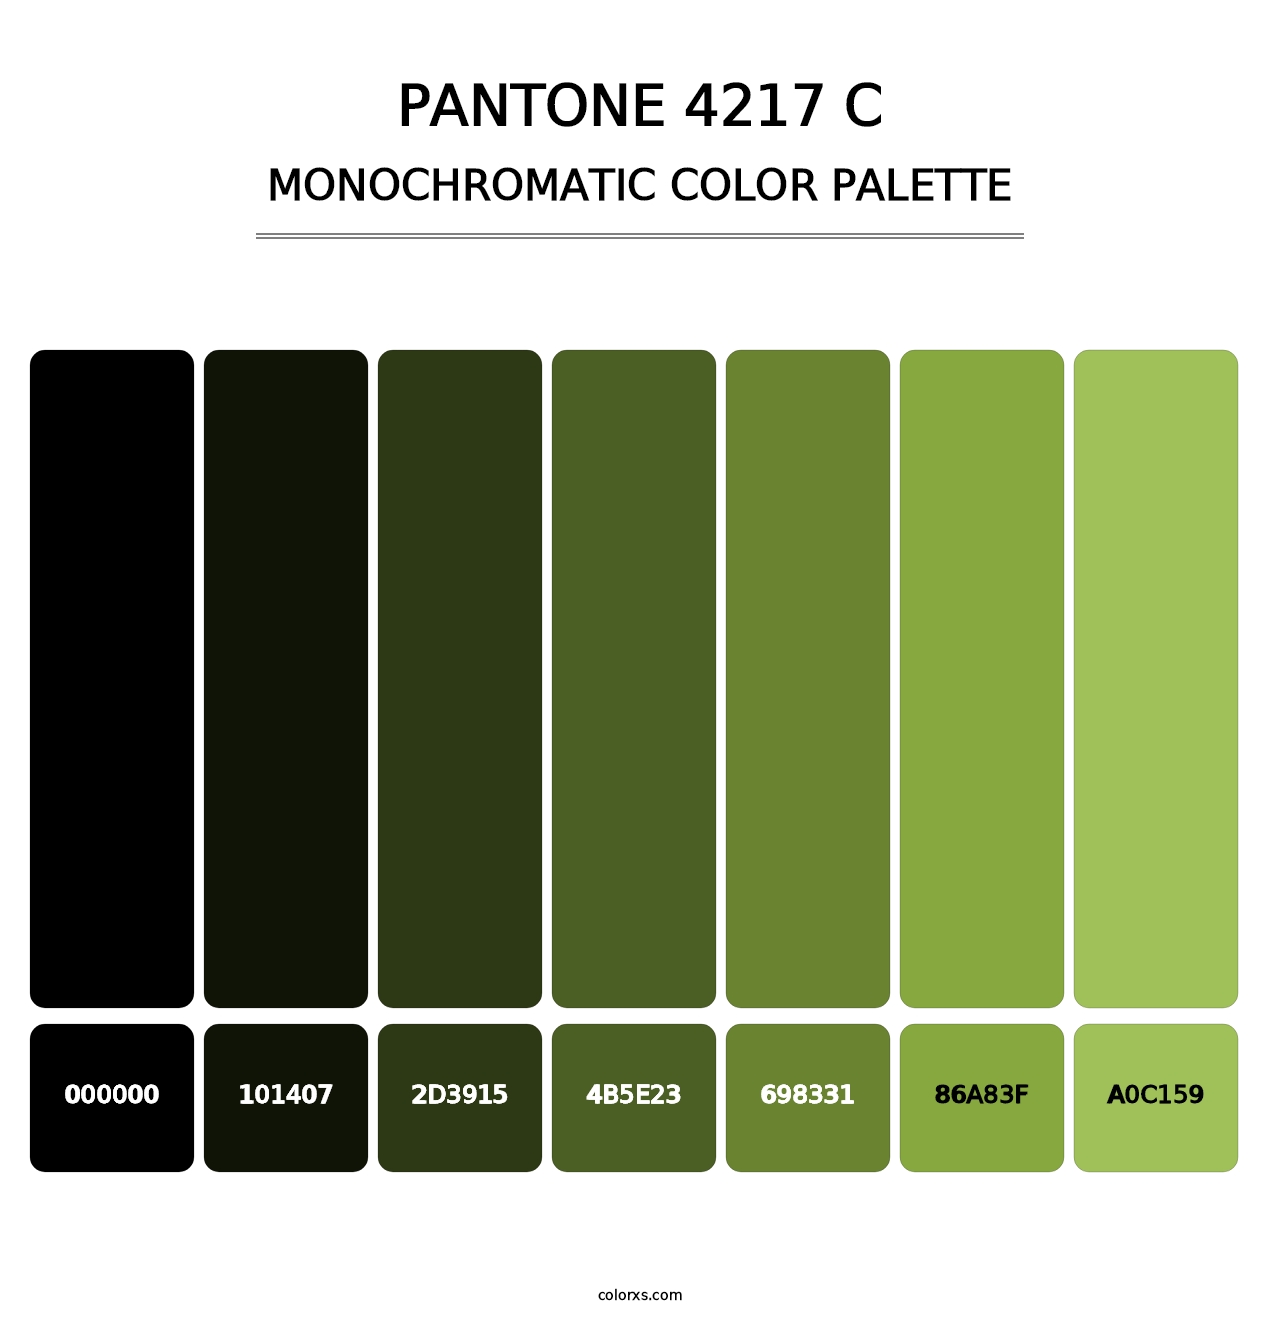 PANTONE 4217 C - Monochromatic Color Palette